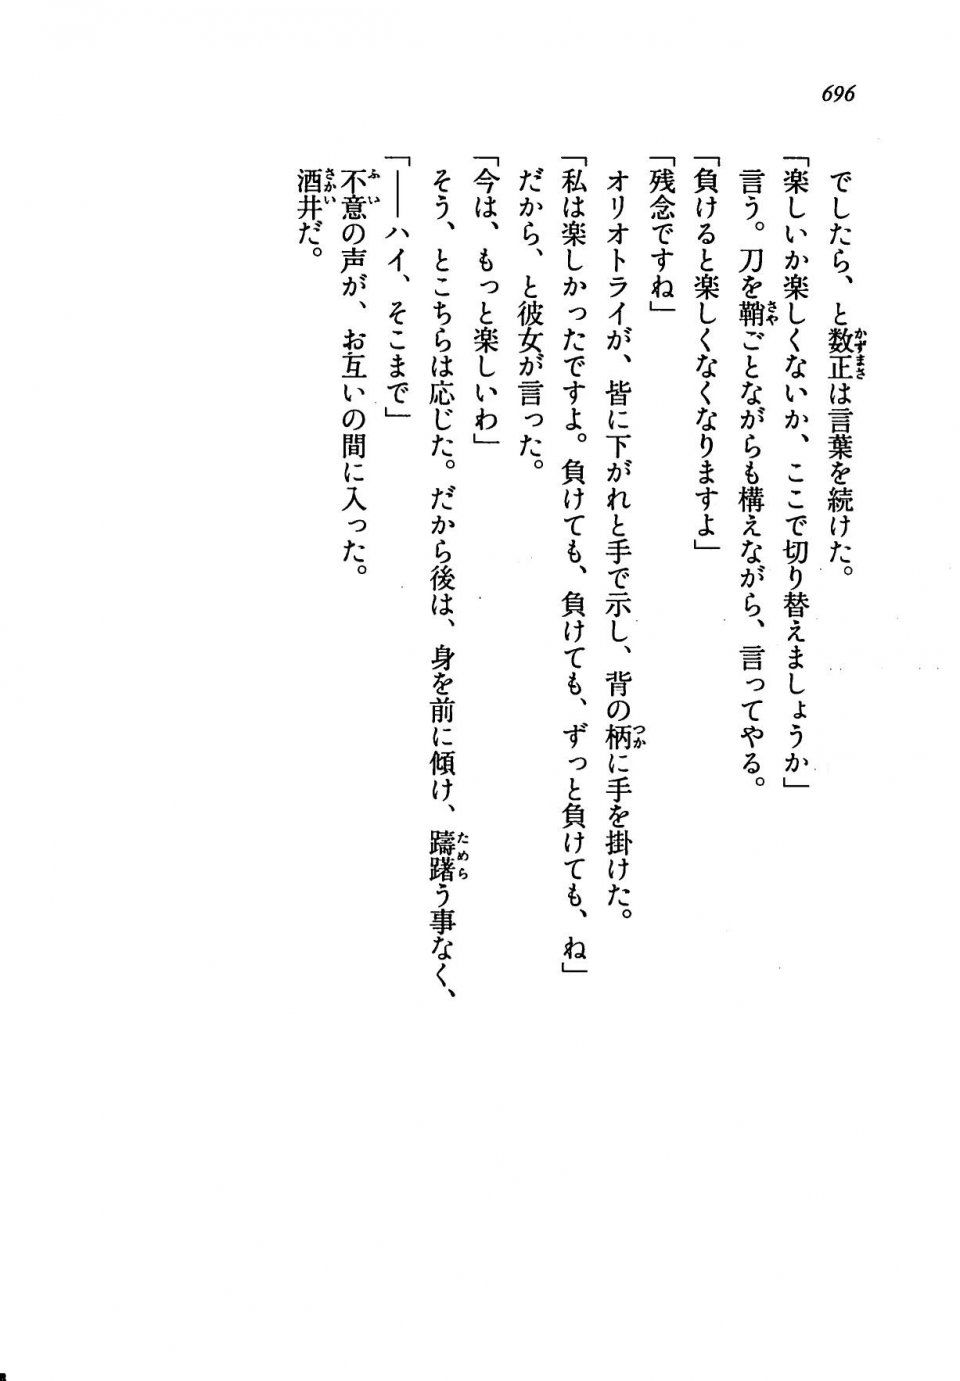 Kyoukai Senjou no Horizon LN Vol 19(8A) - Photo #696